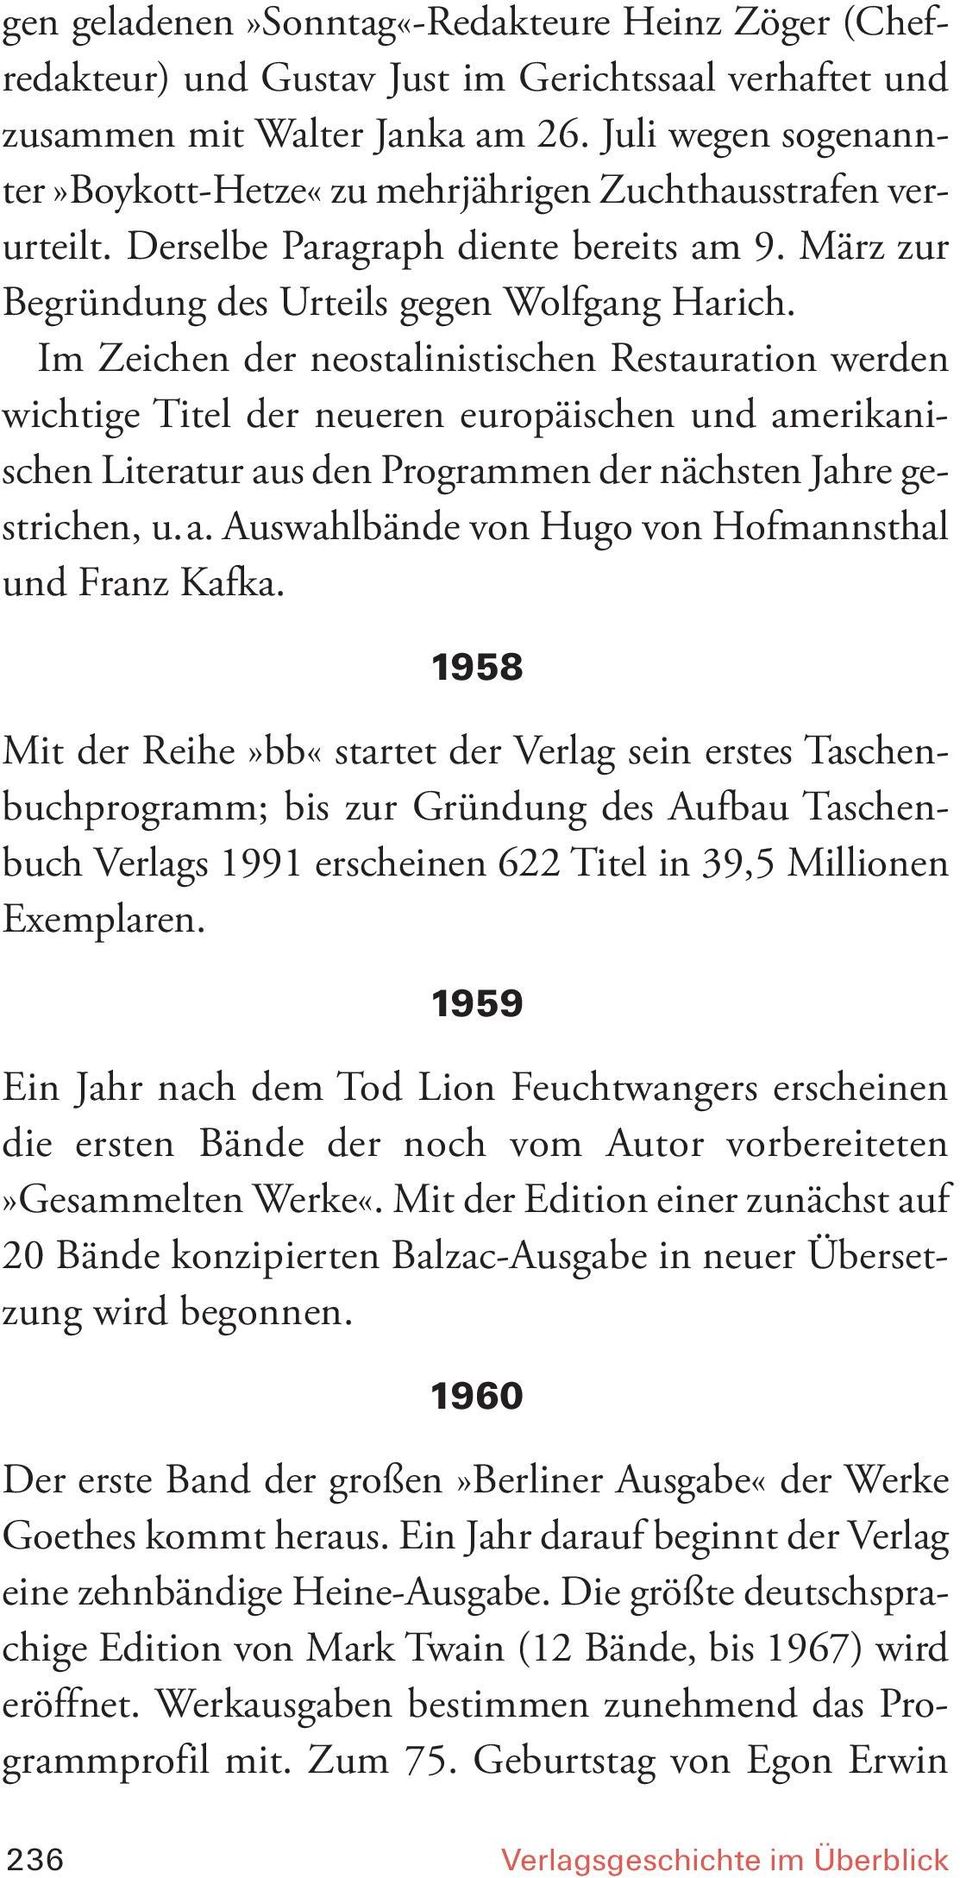 Im Zeichen der neostalinistischen Restauration werden wichtige Titel der neueren europäischen und amerikanischen Literatur aus den Programmen der nächsten Jahre gestrichen, u.a. Auswahlbände von Hugo von Hofmannsthal und Franz Kafka.